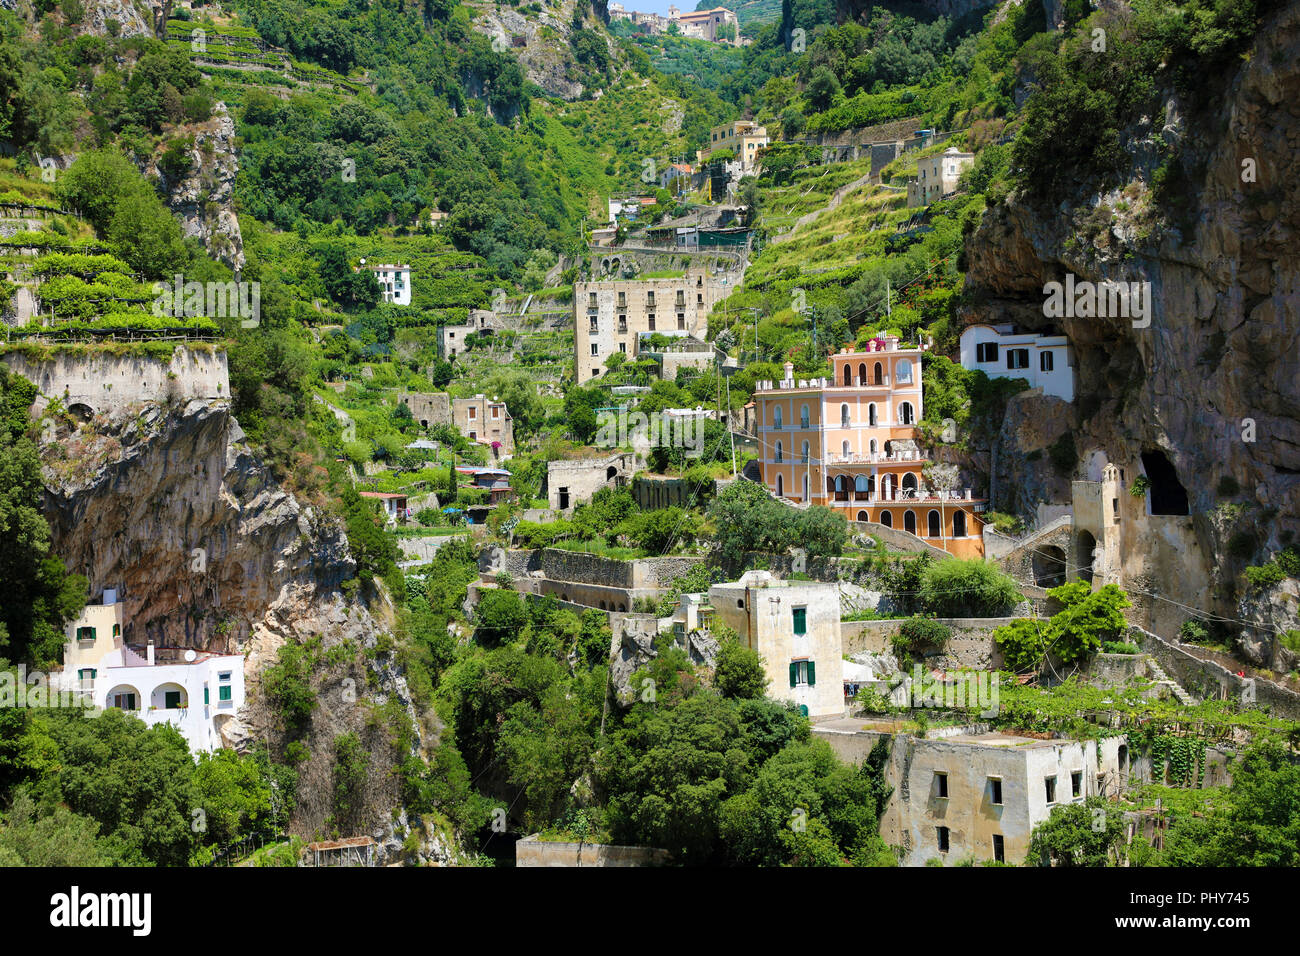 Case sparse sulle montagne rocciose nella natura con vigneti nel villaggio di Atrani, Amalfi, Italia Foto Stock